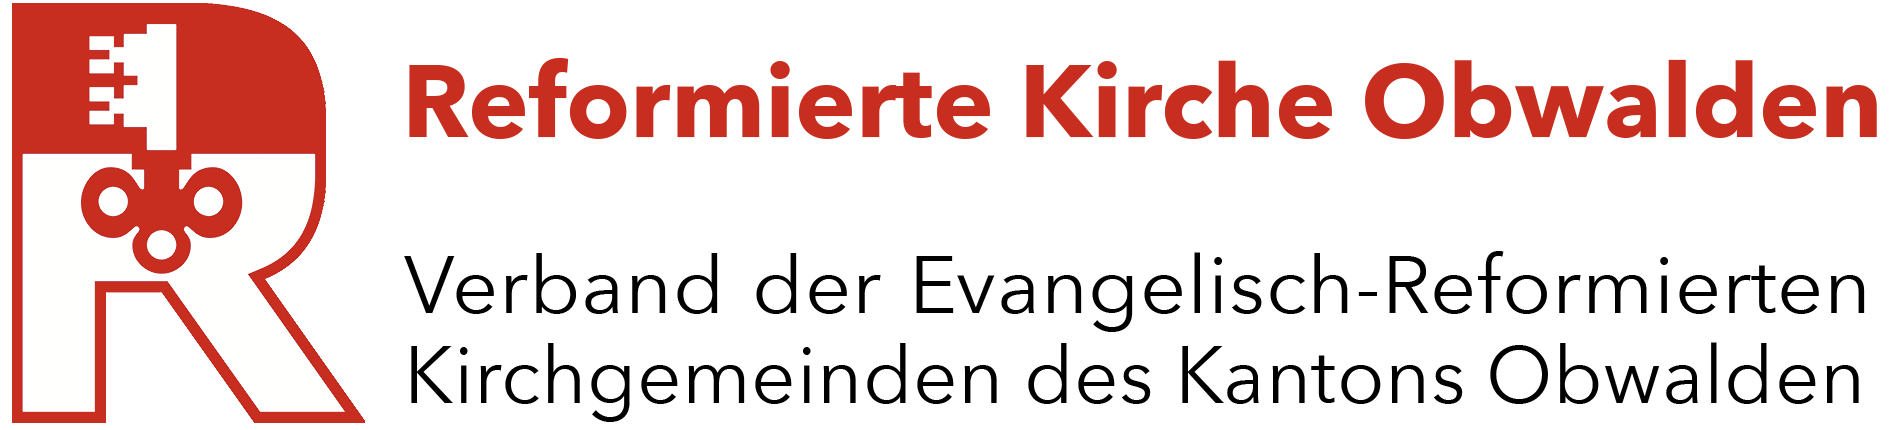 logo_verb-ref-kirchen-obwalden